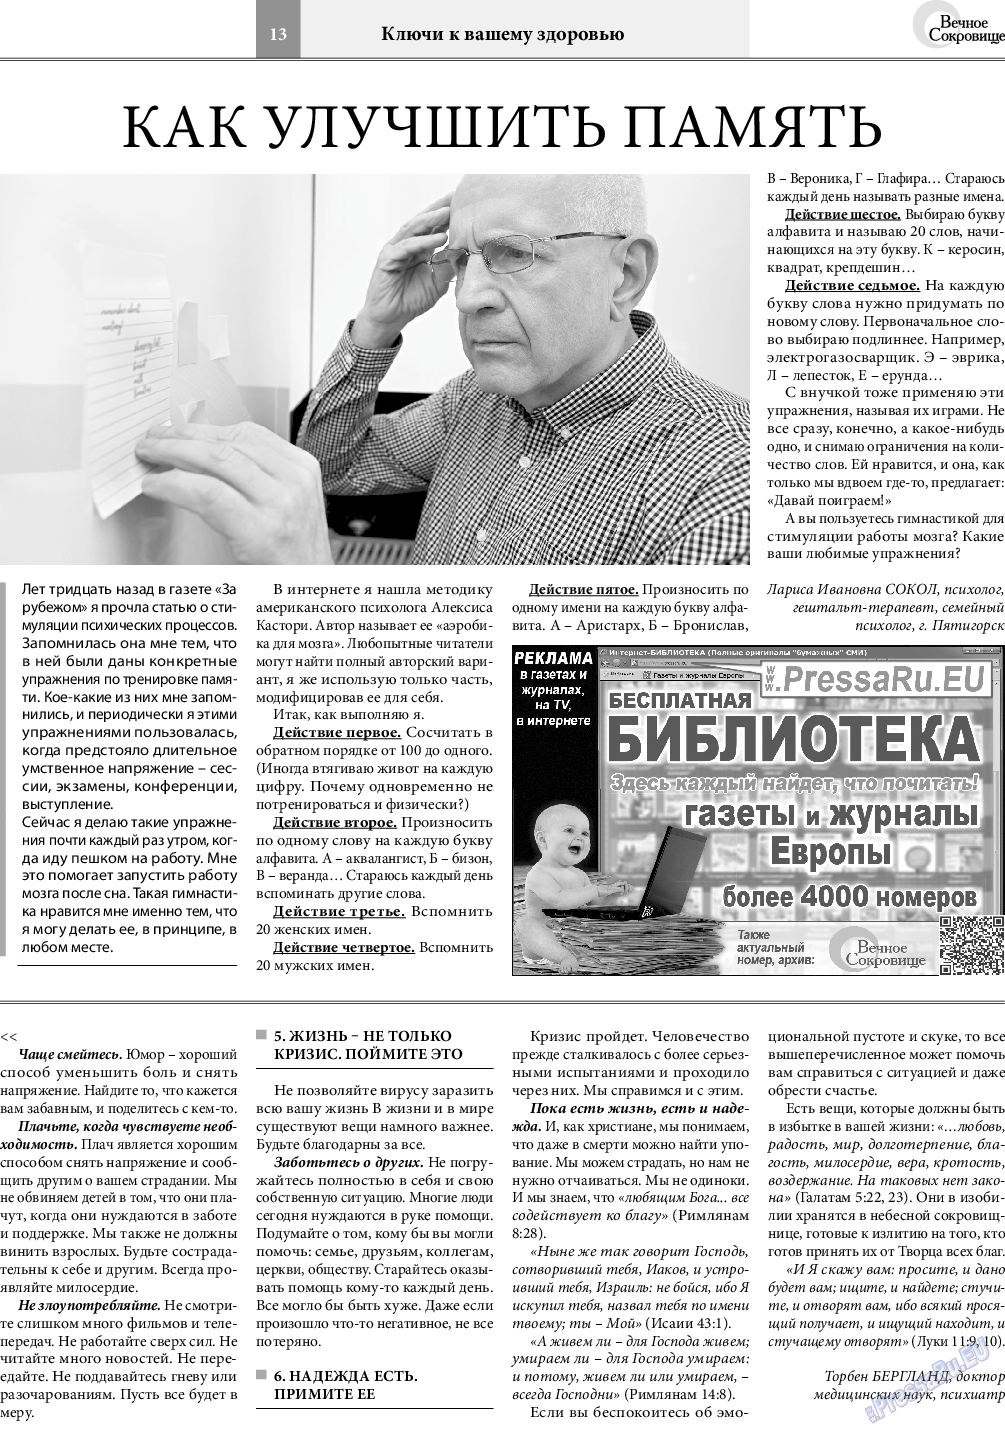 Вечное сокровище, газета. 2021 №1 стр.13